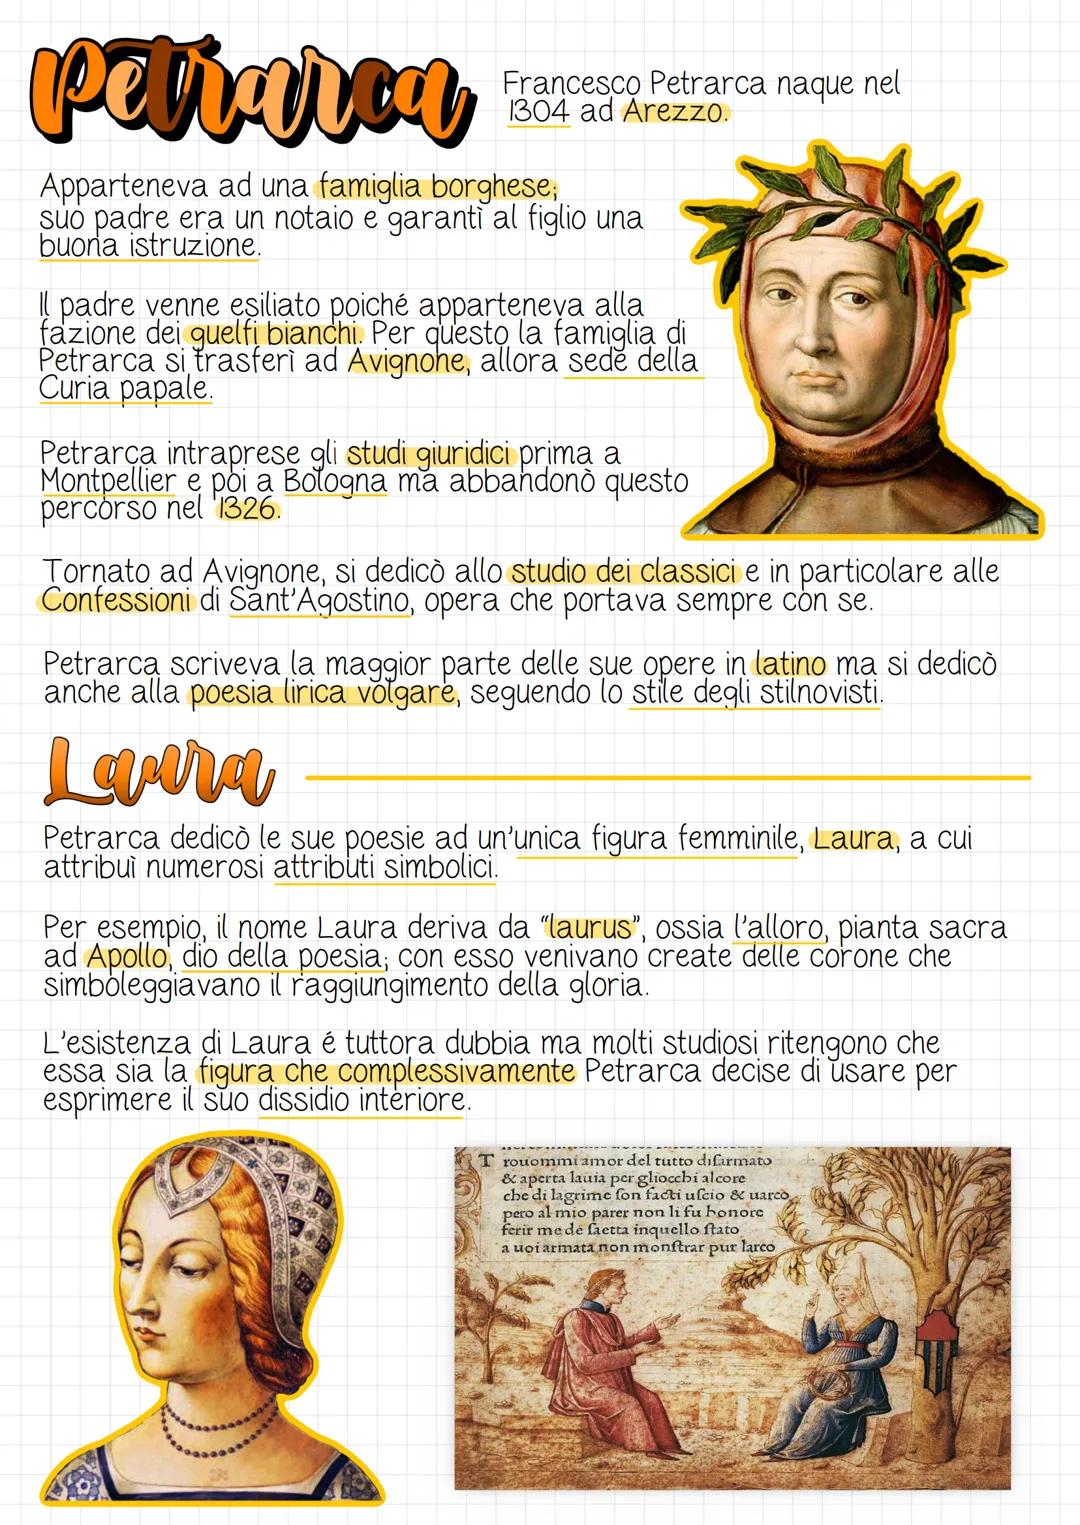 Petrarca
Apparteneva ad una famiglia borghese,
suo padre era un notaio e garantì al figlio una
buona istruzione.
Francesco Petrarca naque ne